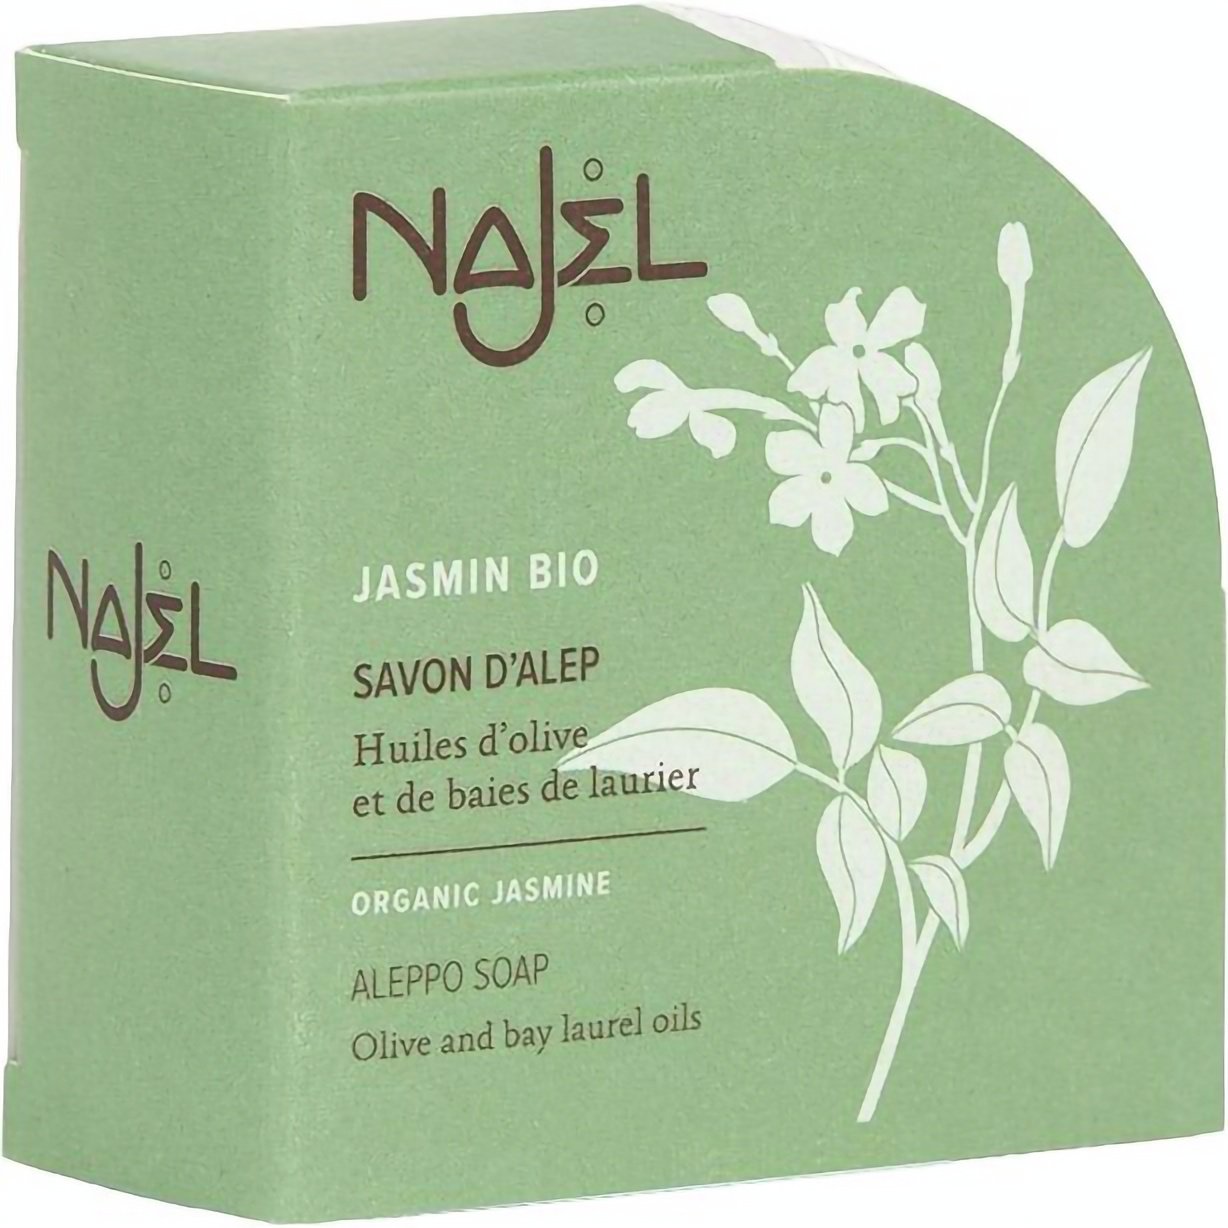 Алеппське мило Najel Aleppo Soap Organic Jasmine з органічним жасмином 100 г - фото 1